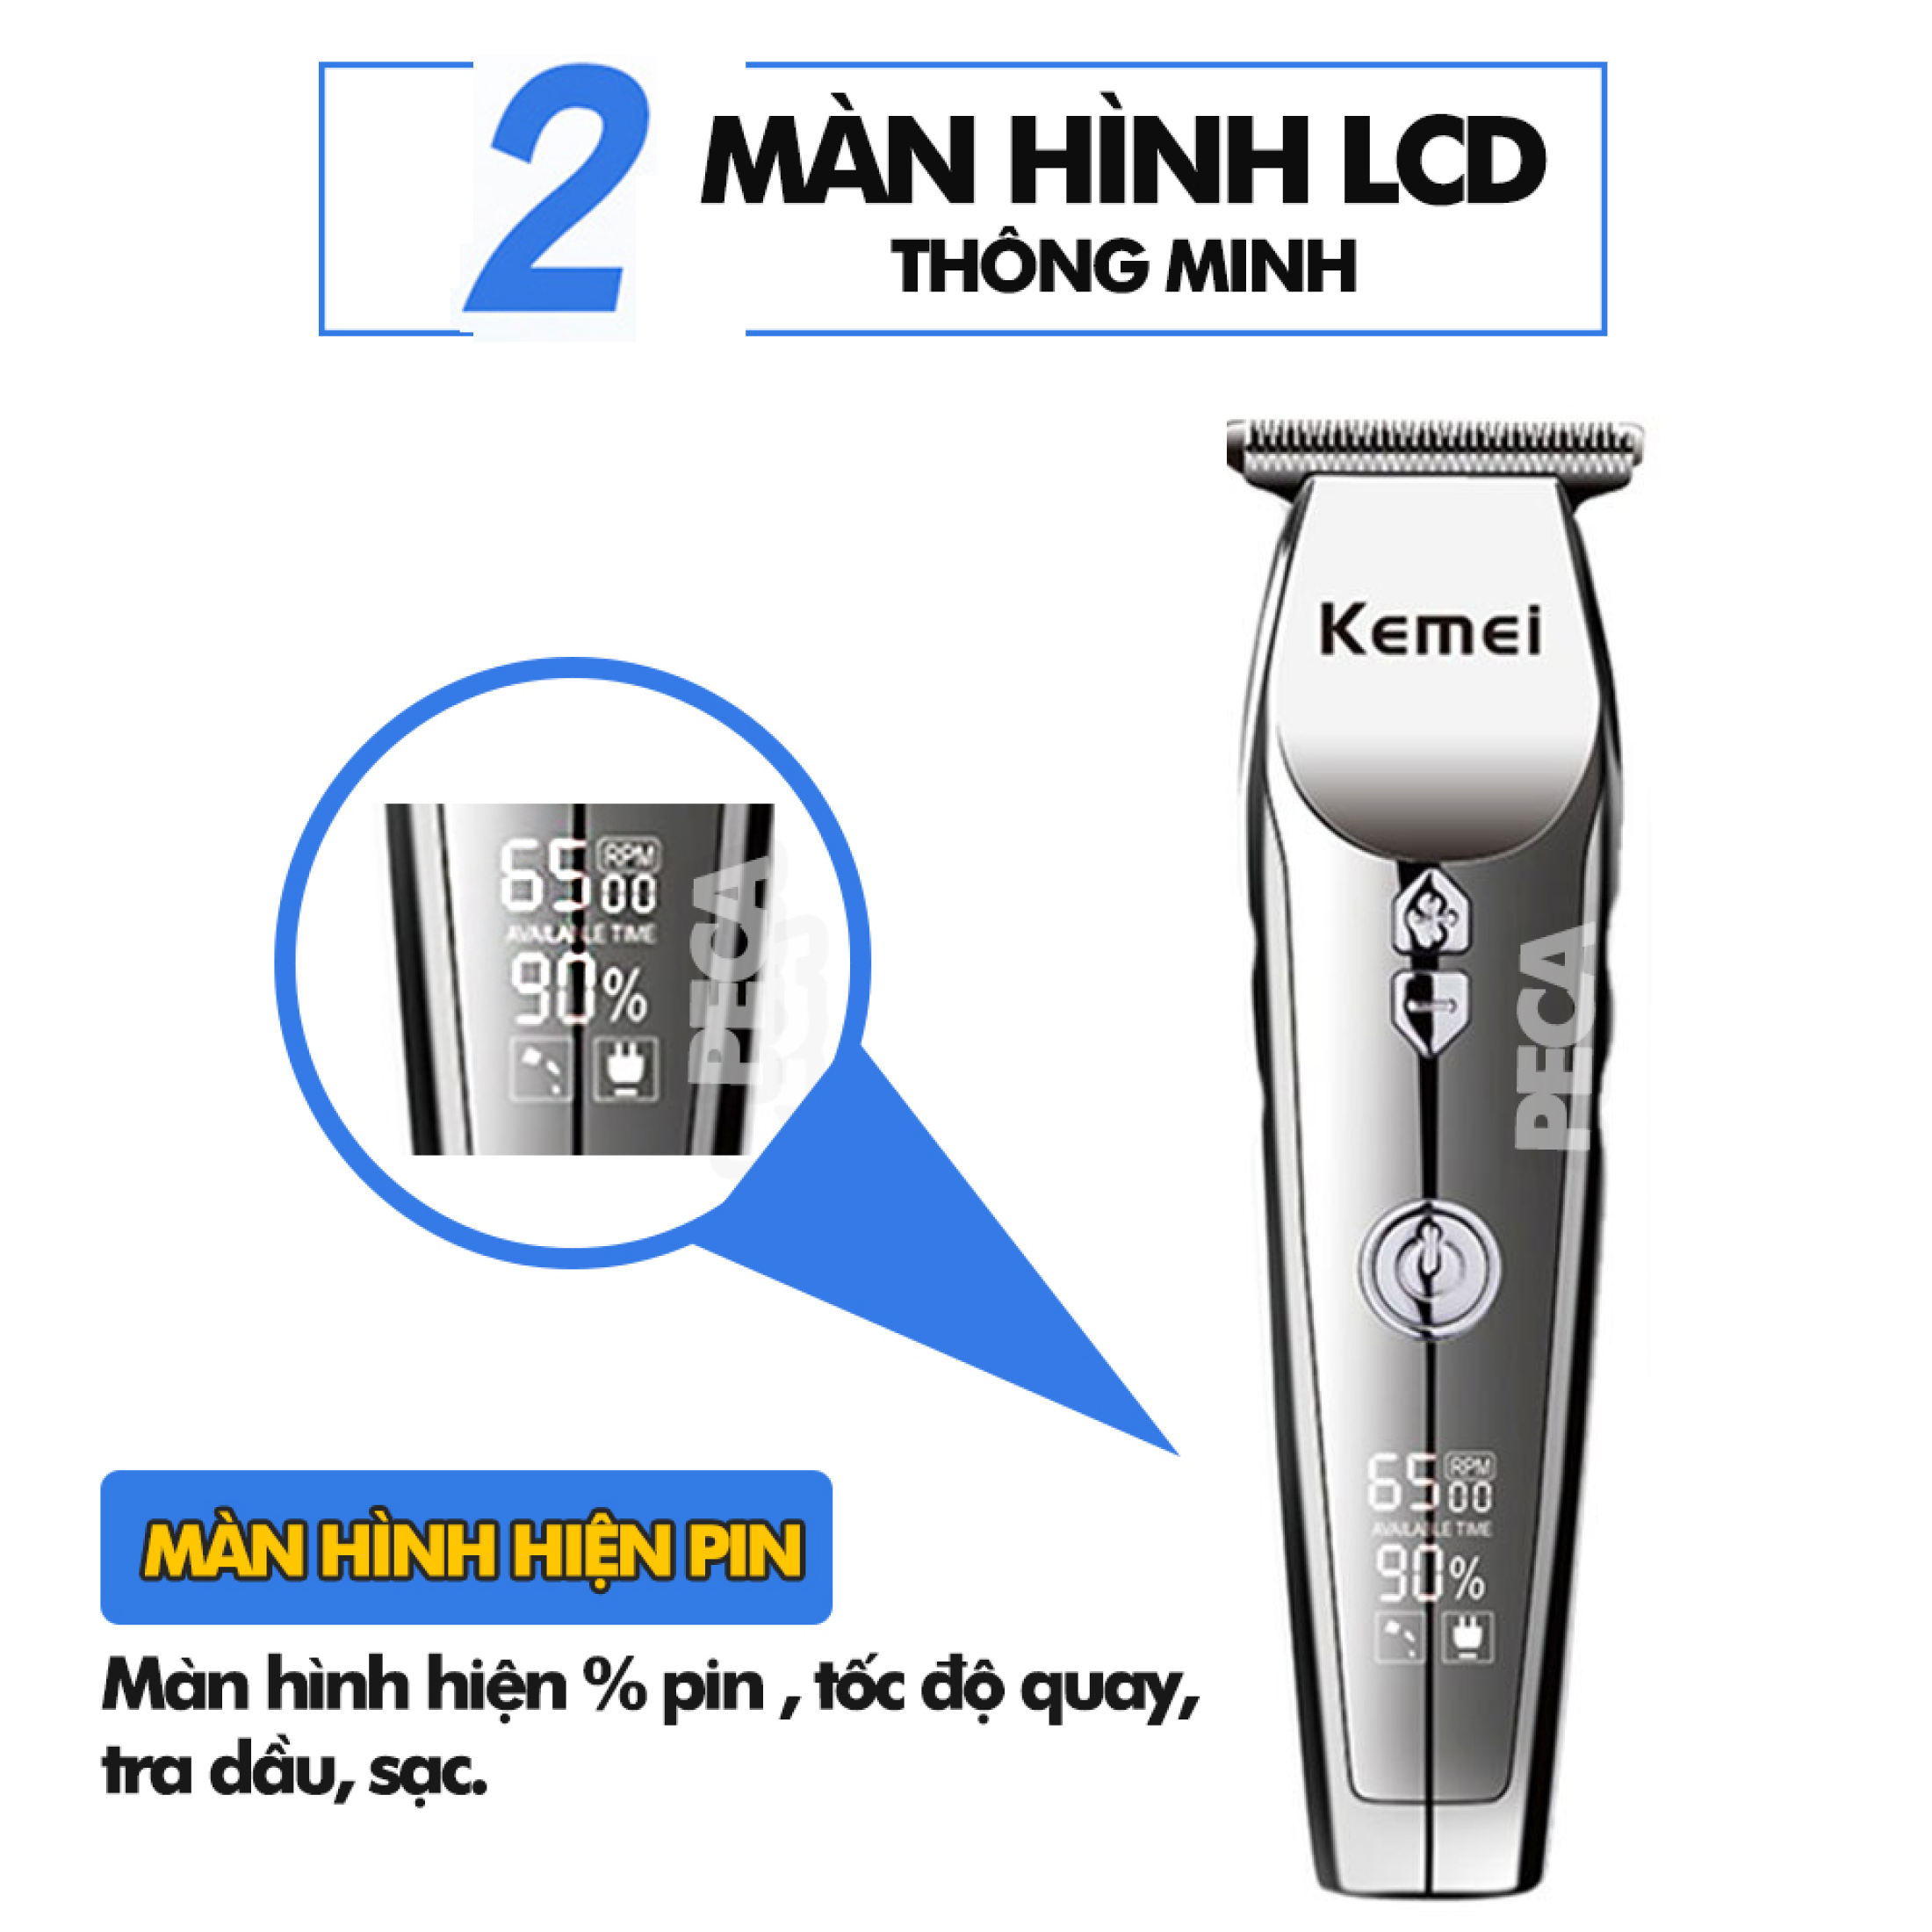 Tông đơ chấn viền cao cấp KEMEI KM-126 màn hình LED hiển thị điều chỉnh 3 mức tốc độ sử dụng pin sạc tiện lợi có thể dùng cắt tóc, cạo trắng, cạo đầu, điêu khắc, tatto tóc